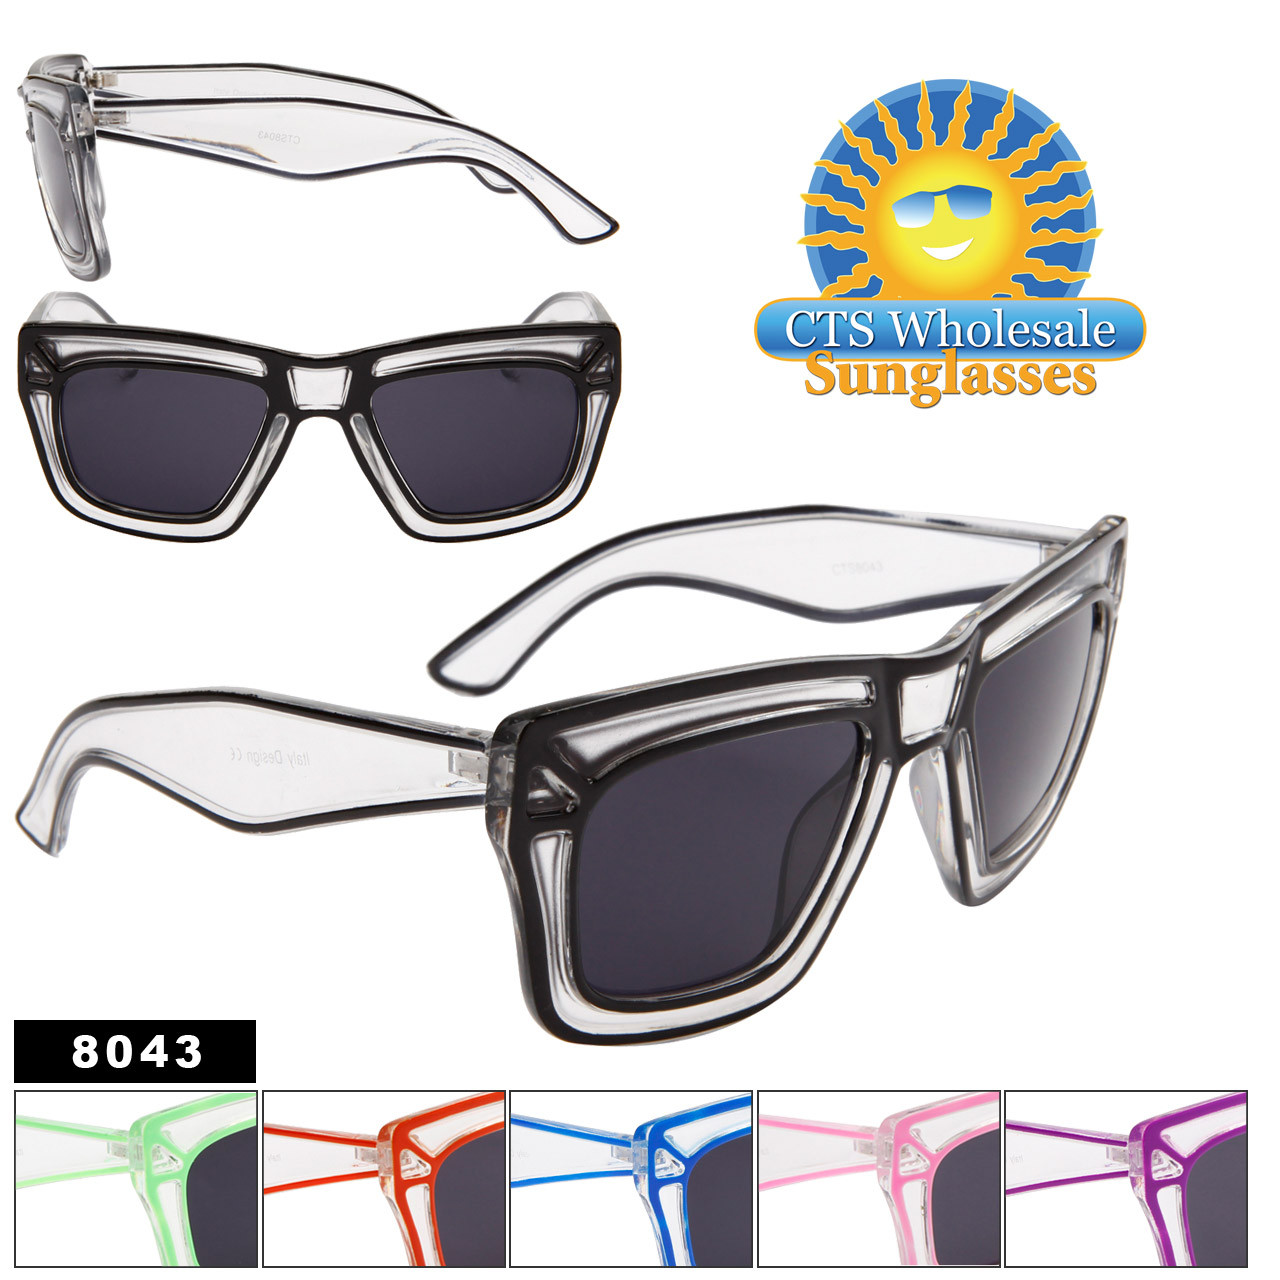 Wholesale Sunglasses by the Dozen - Style # 8043 (12 pcs.)